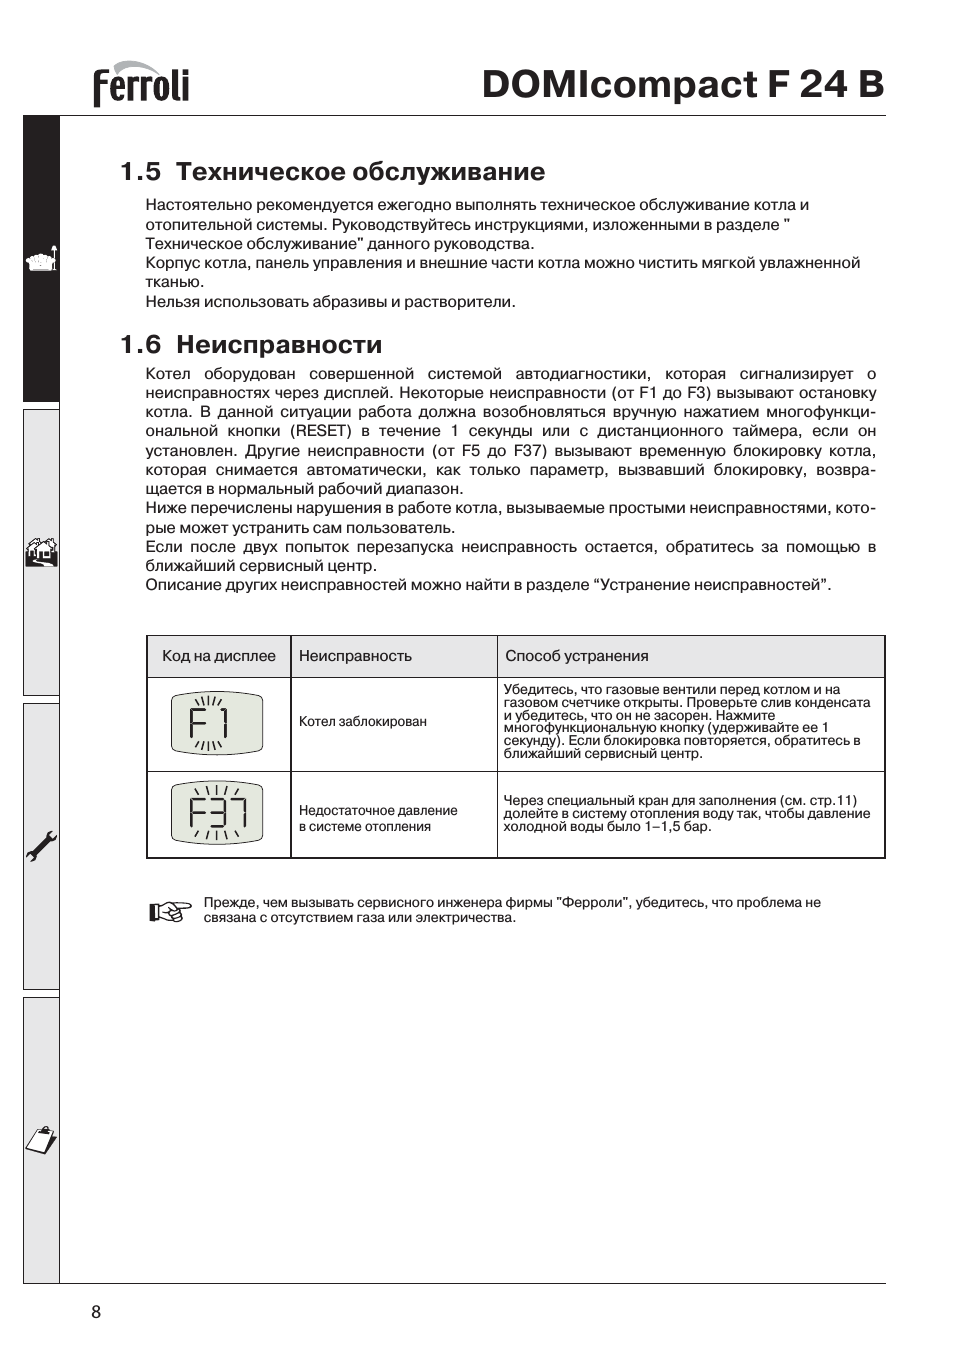 Ferroli gn1: инструкция и руководство на русском